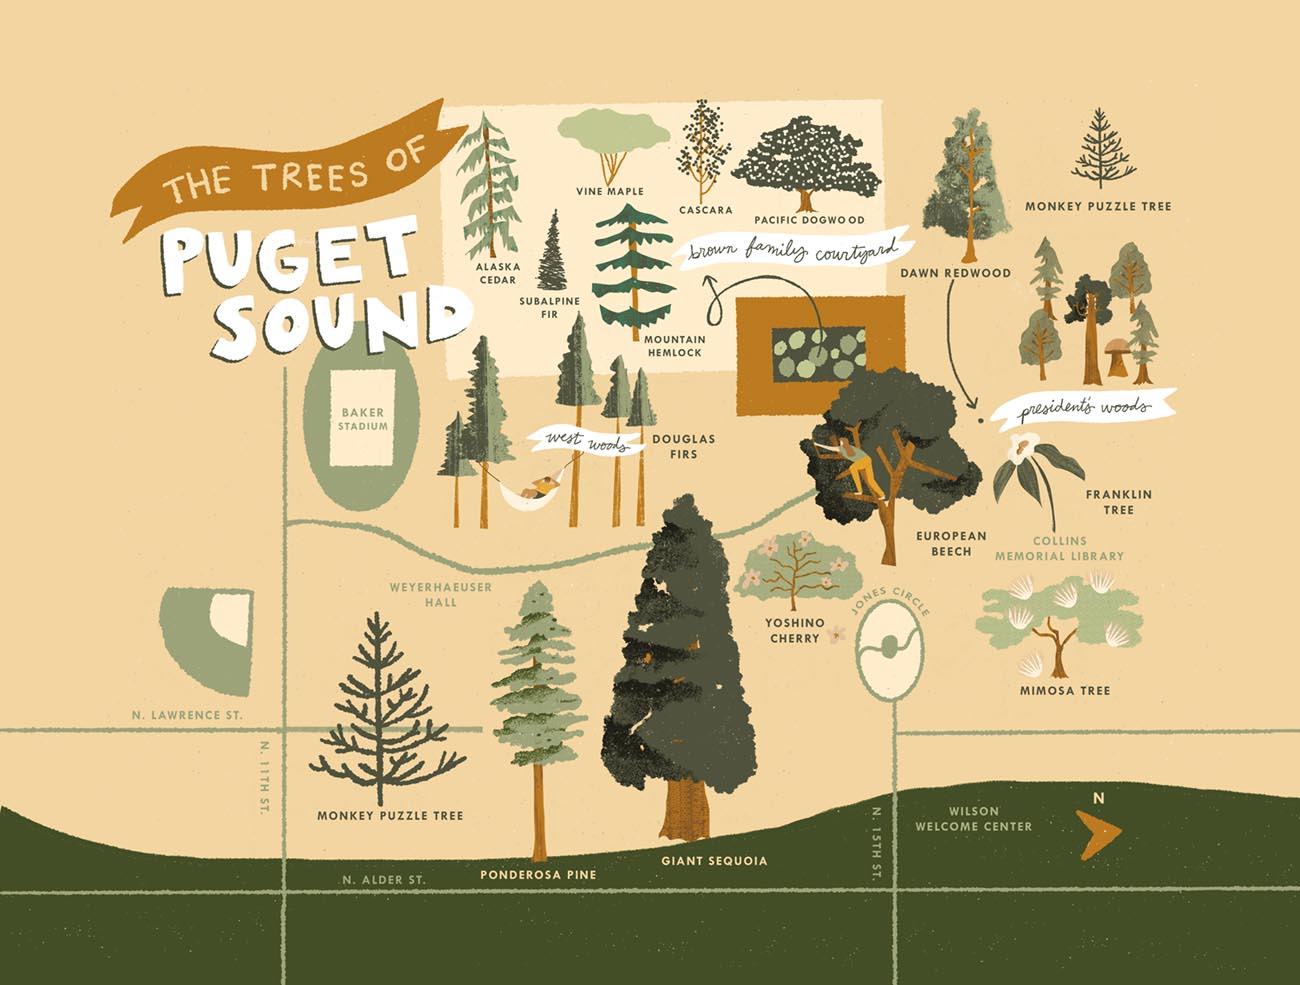 Puget Sound Trees illustration